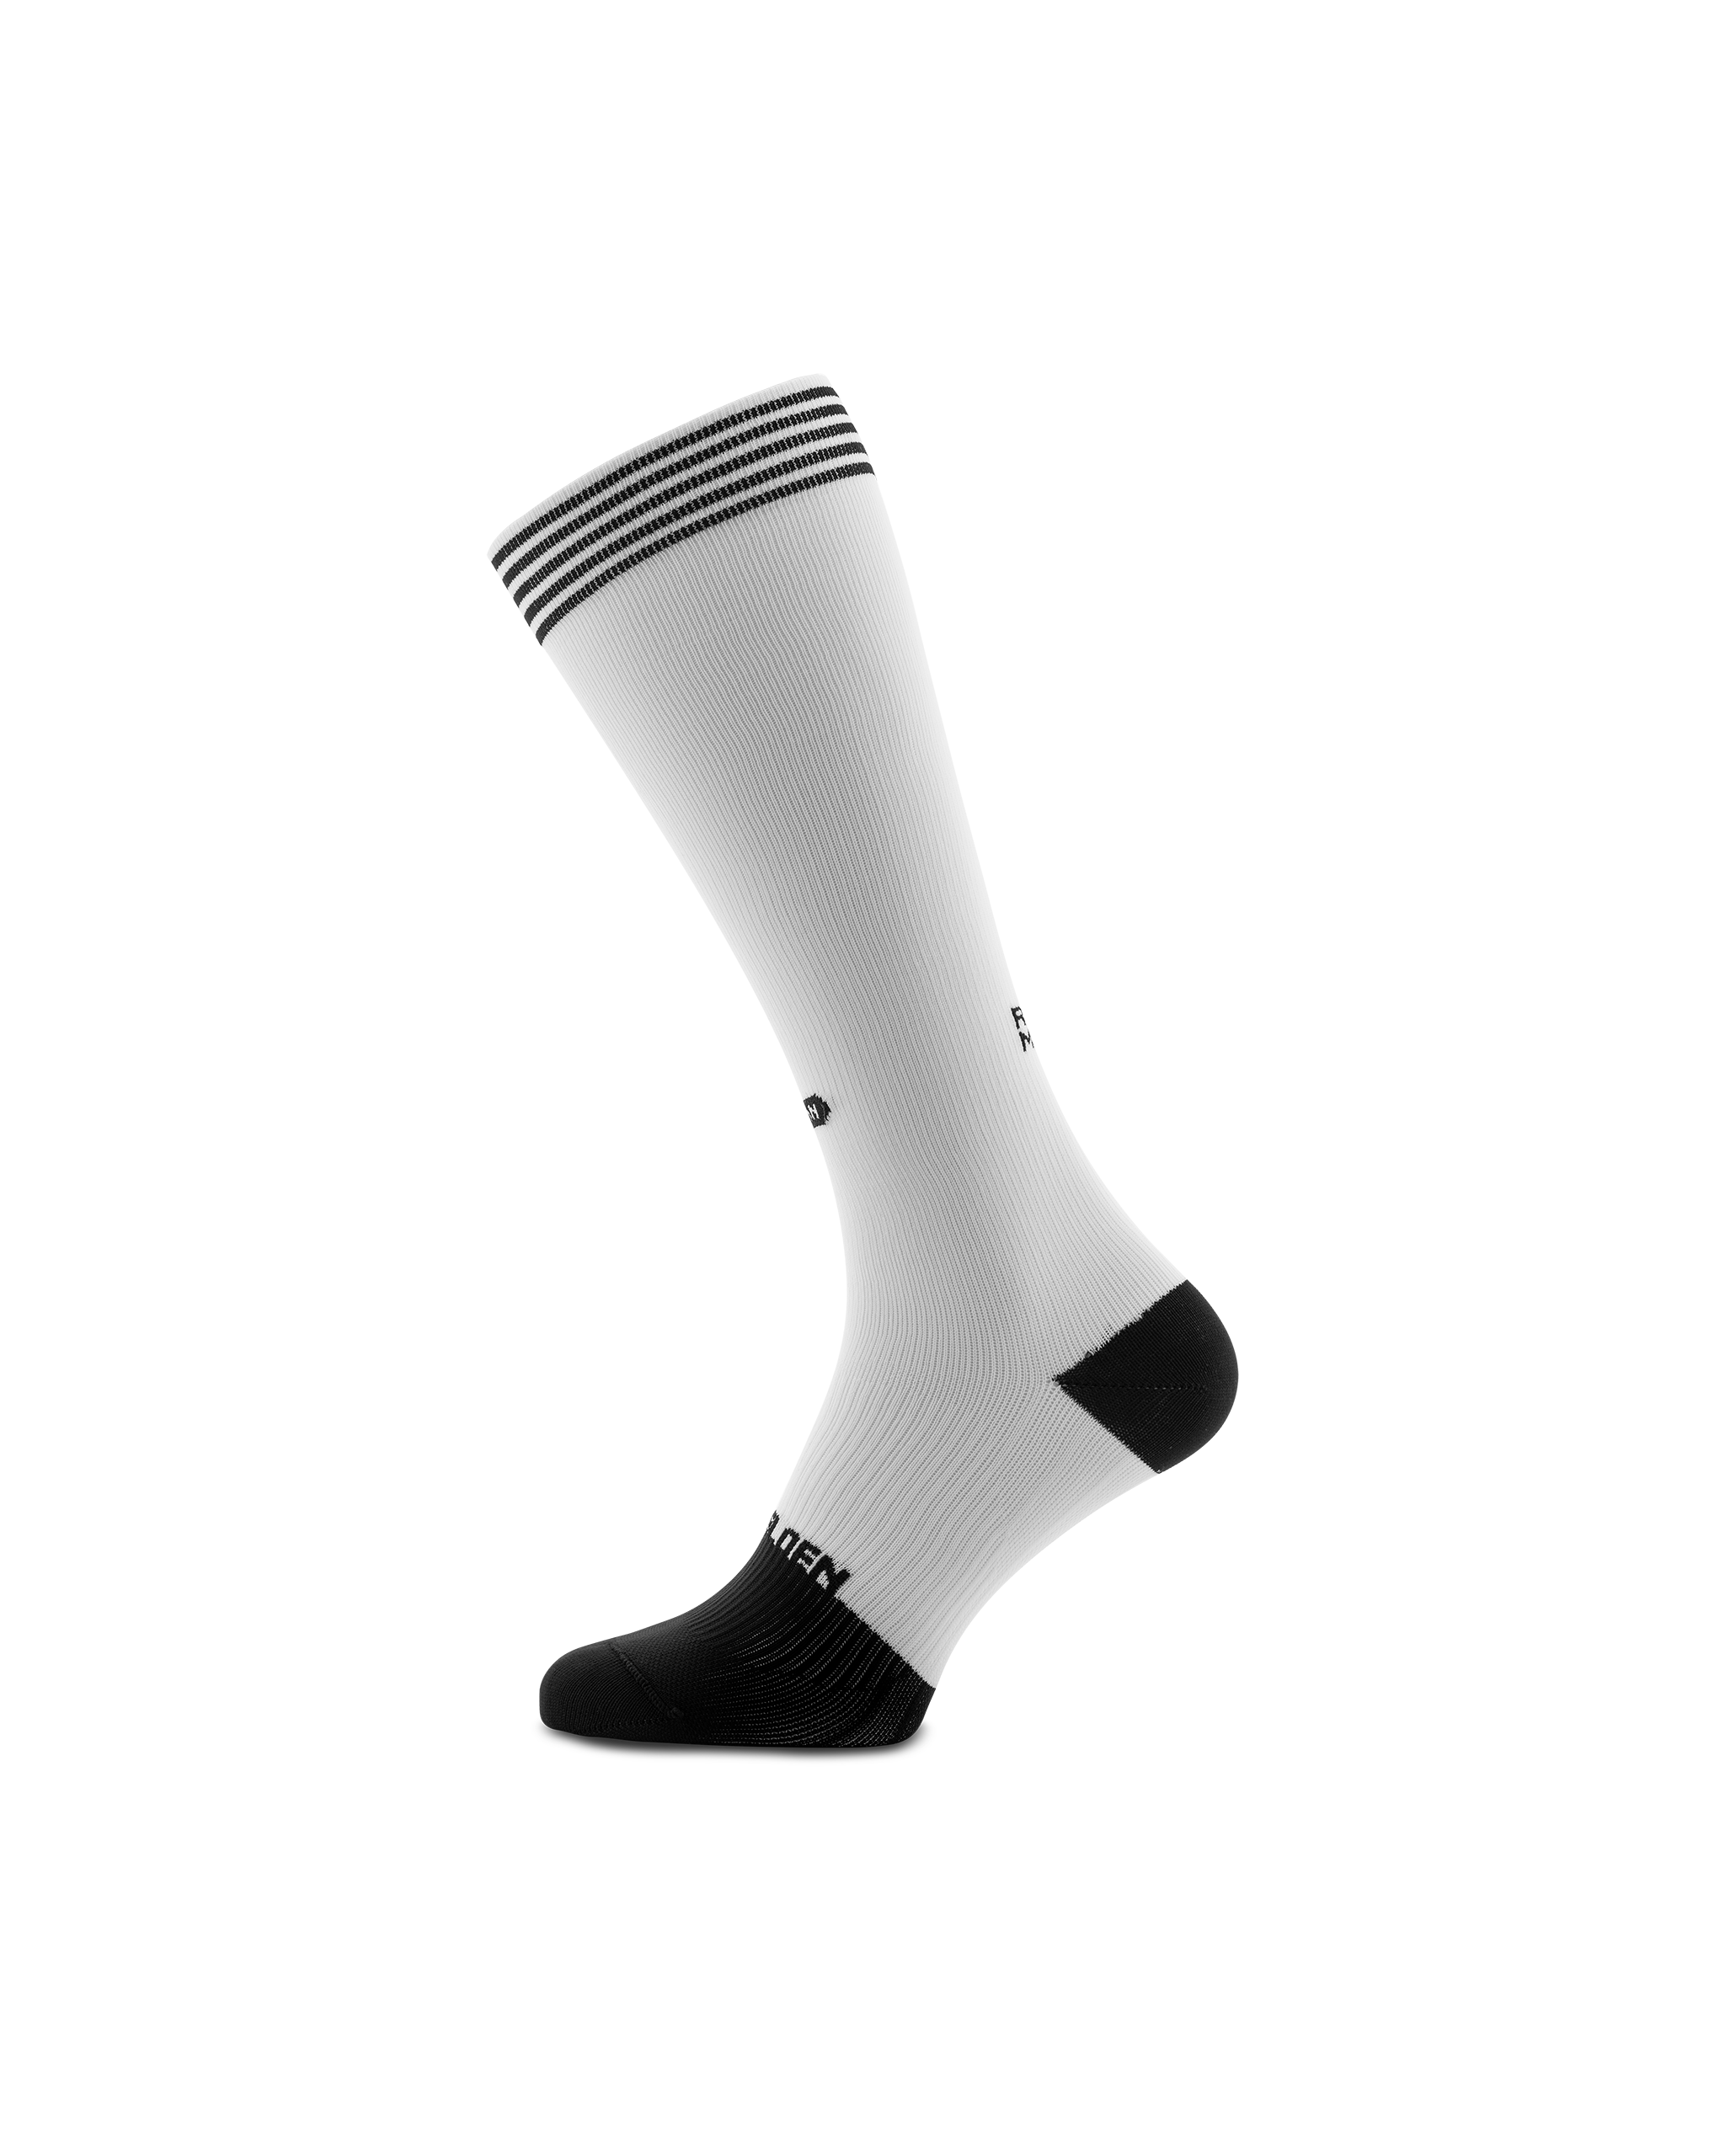 Rest mode high compression socks | Sockeloen™